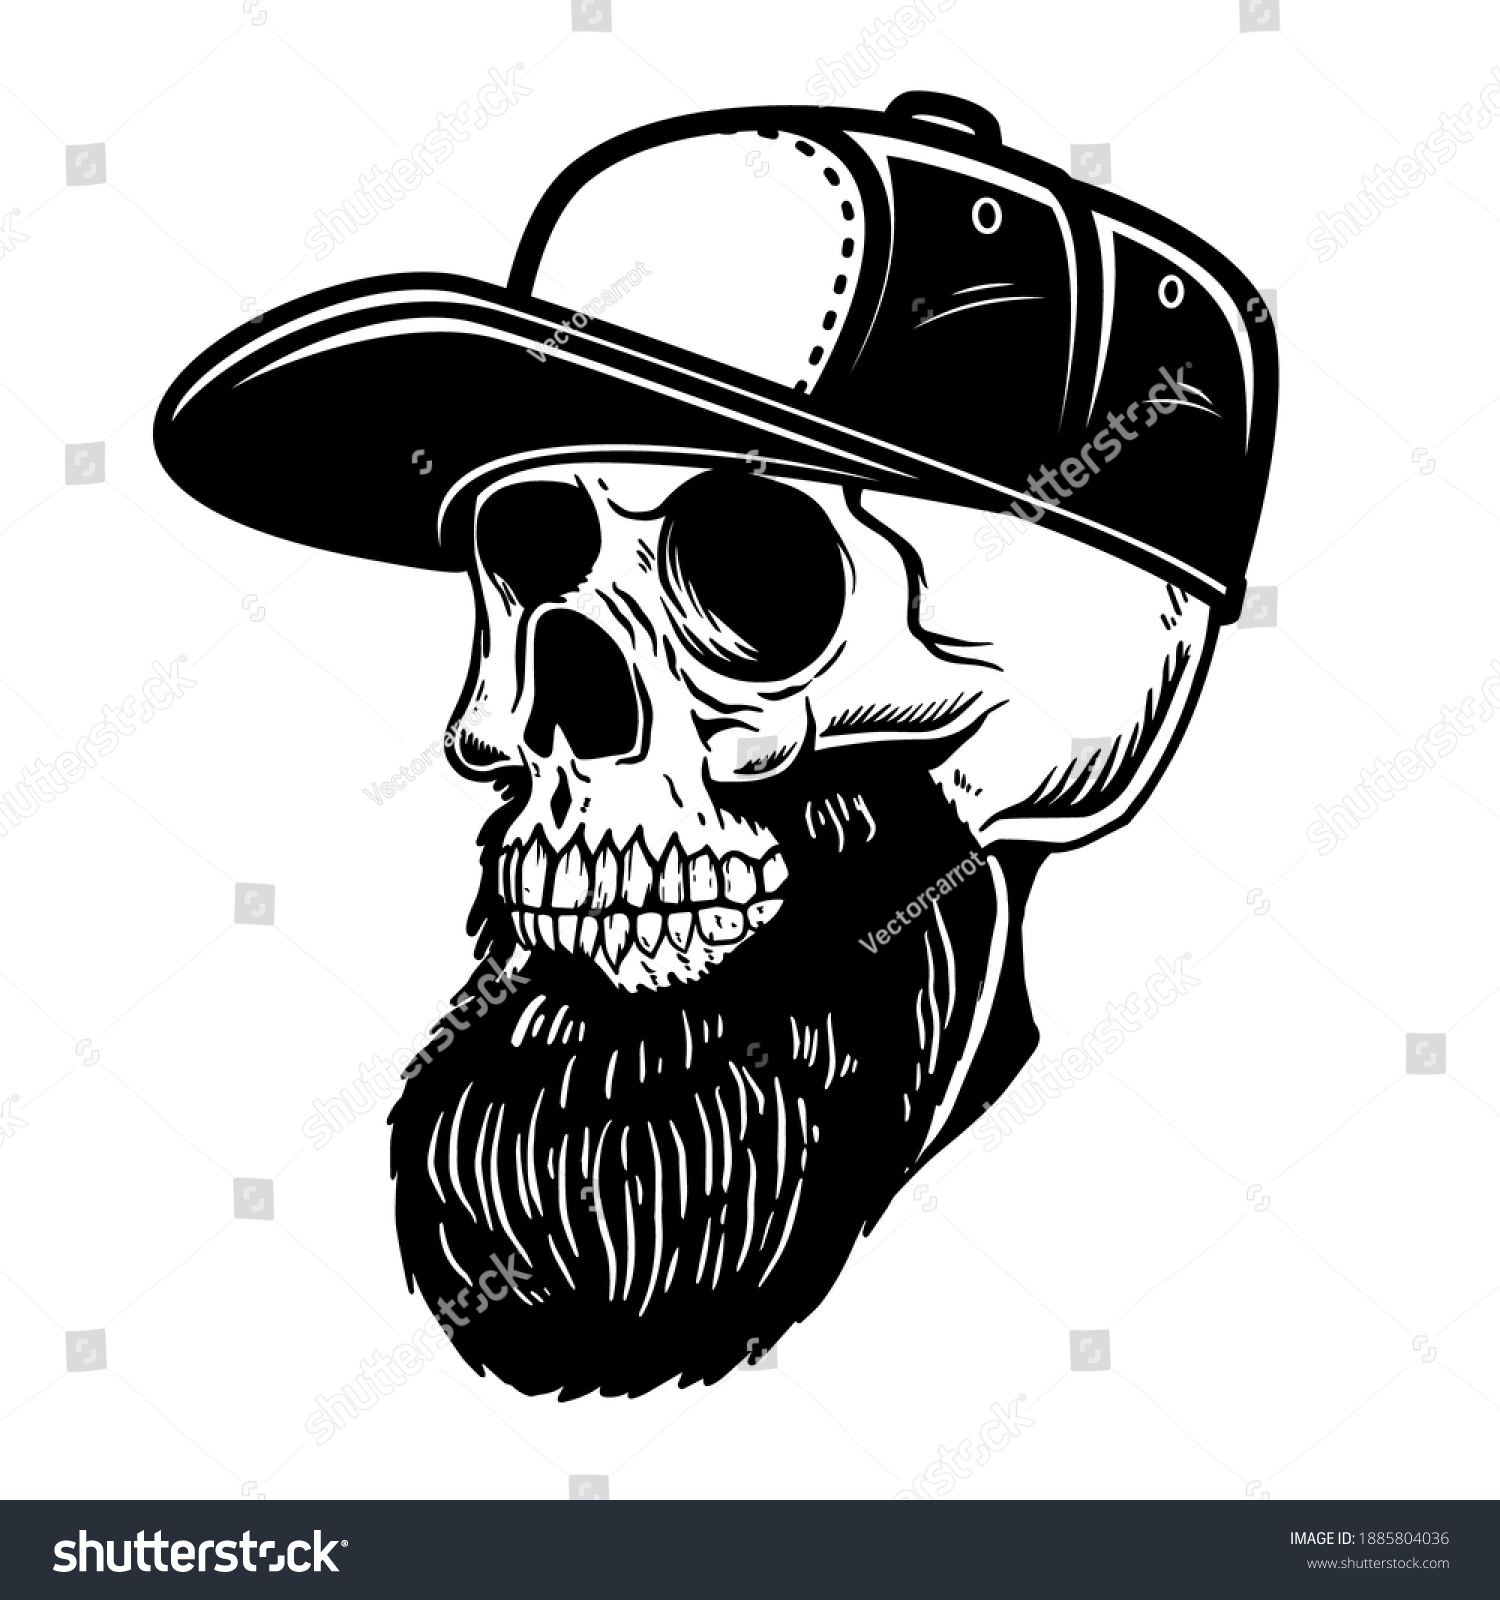 Illustration Bearded Skull Baseball Cap Design Stock Vector Royalty Free 1885804036